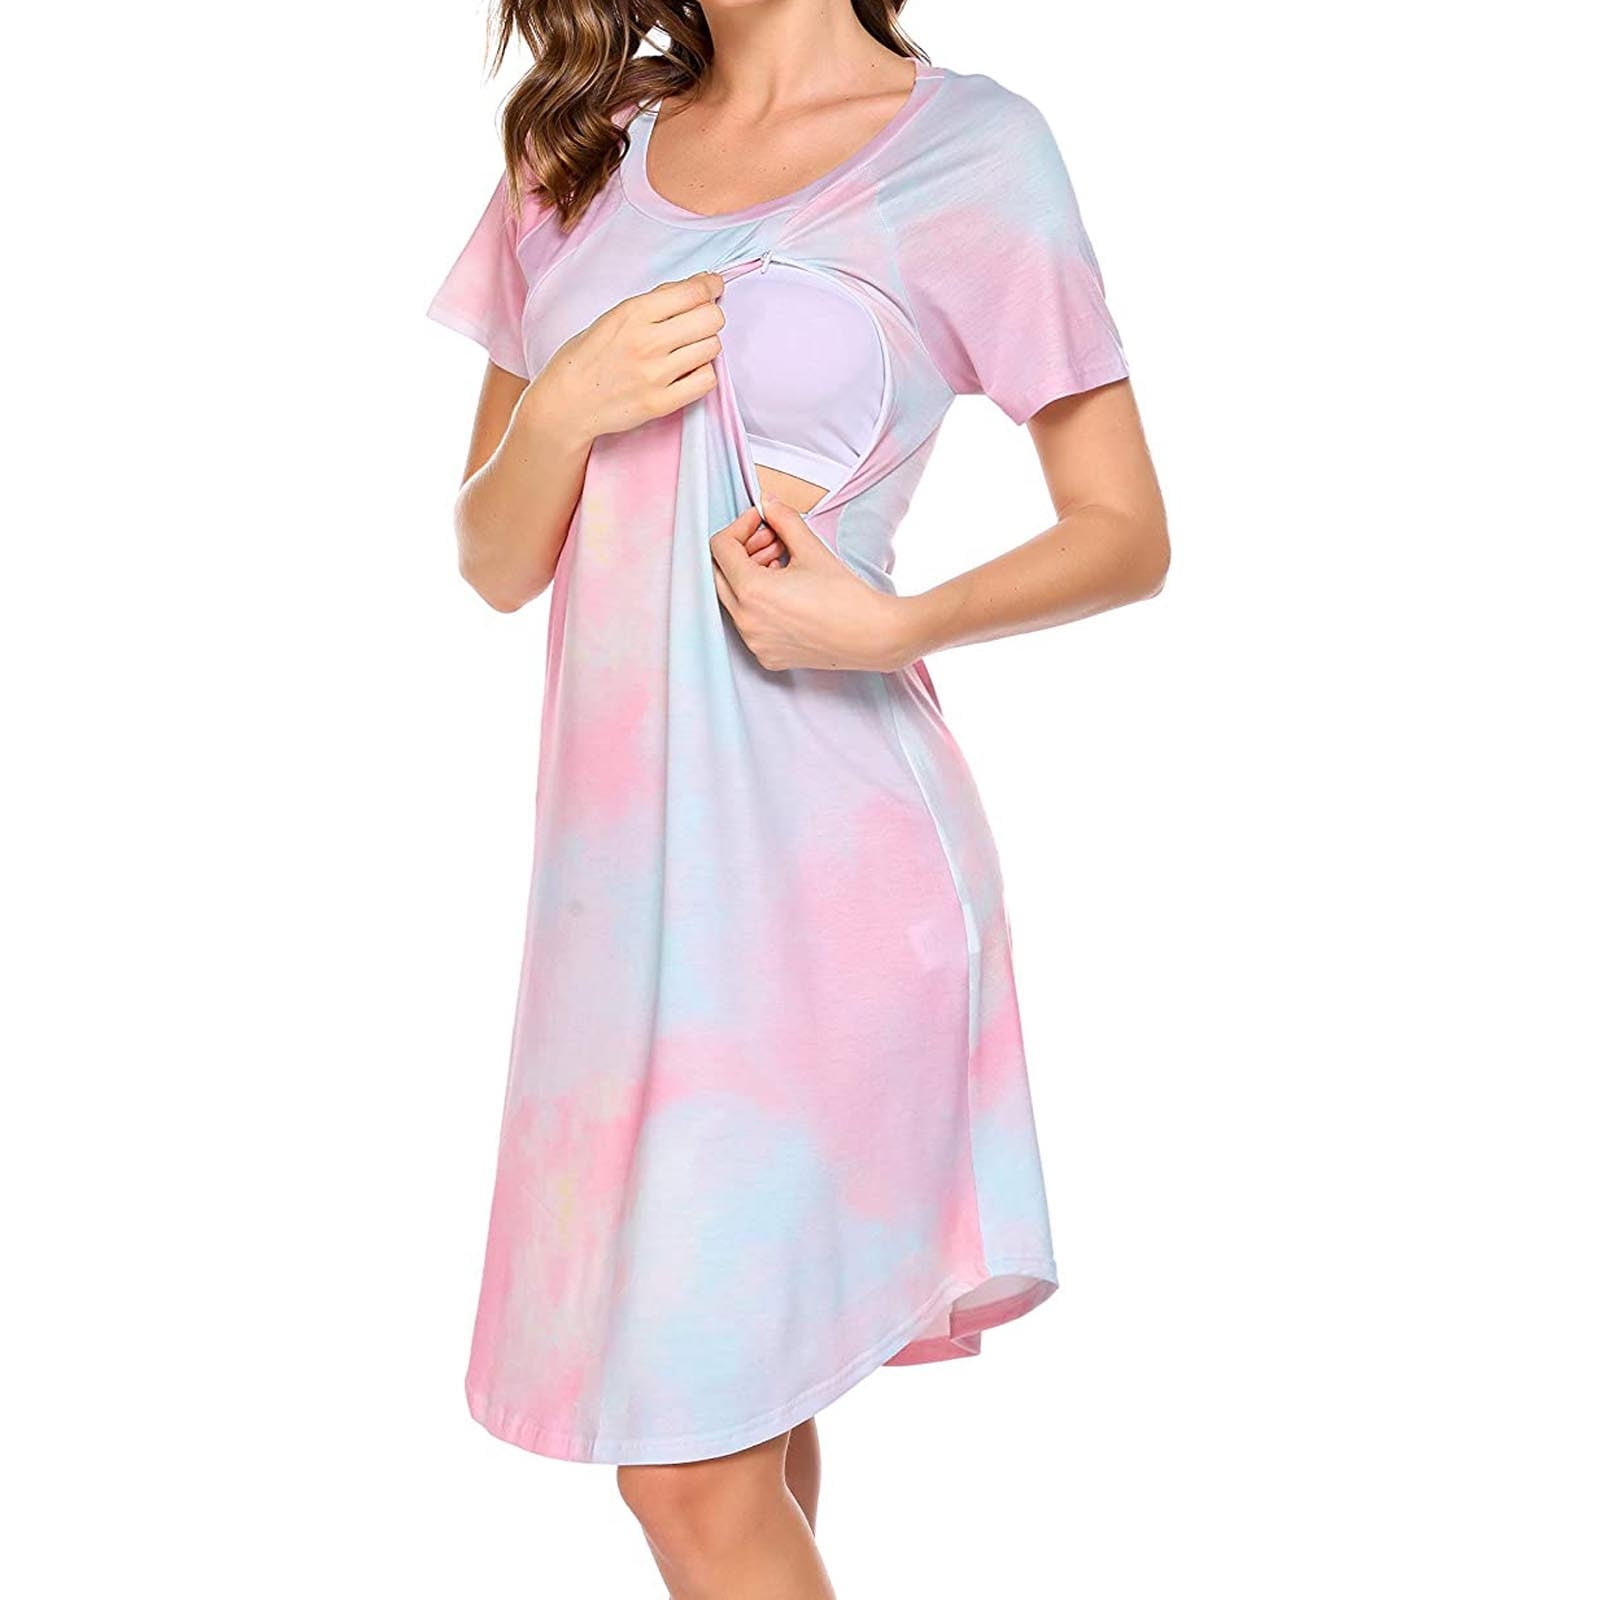 Lolmot Womens Tie Dye Nursing Dress for Breastfeeding Short Sleeve  Nightgown Casual Loose Sleep Dress Loungewear Maternity Dress with Zipper  on